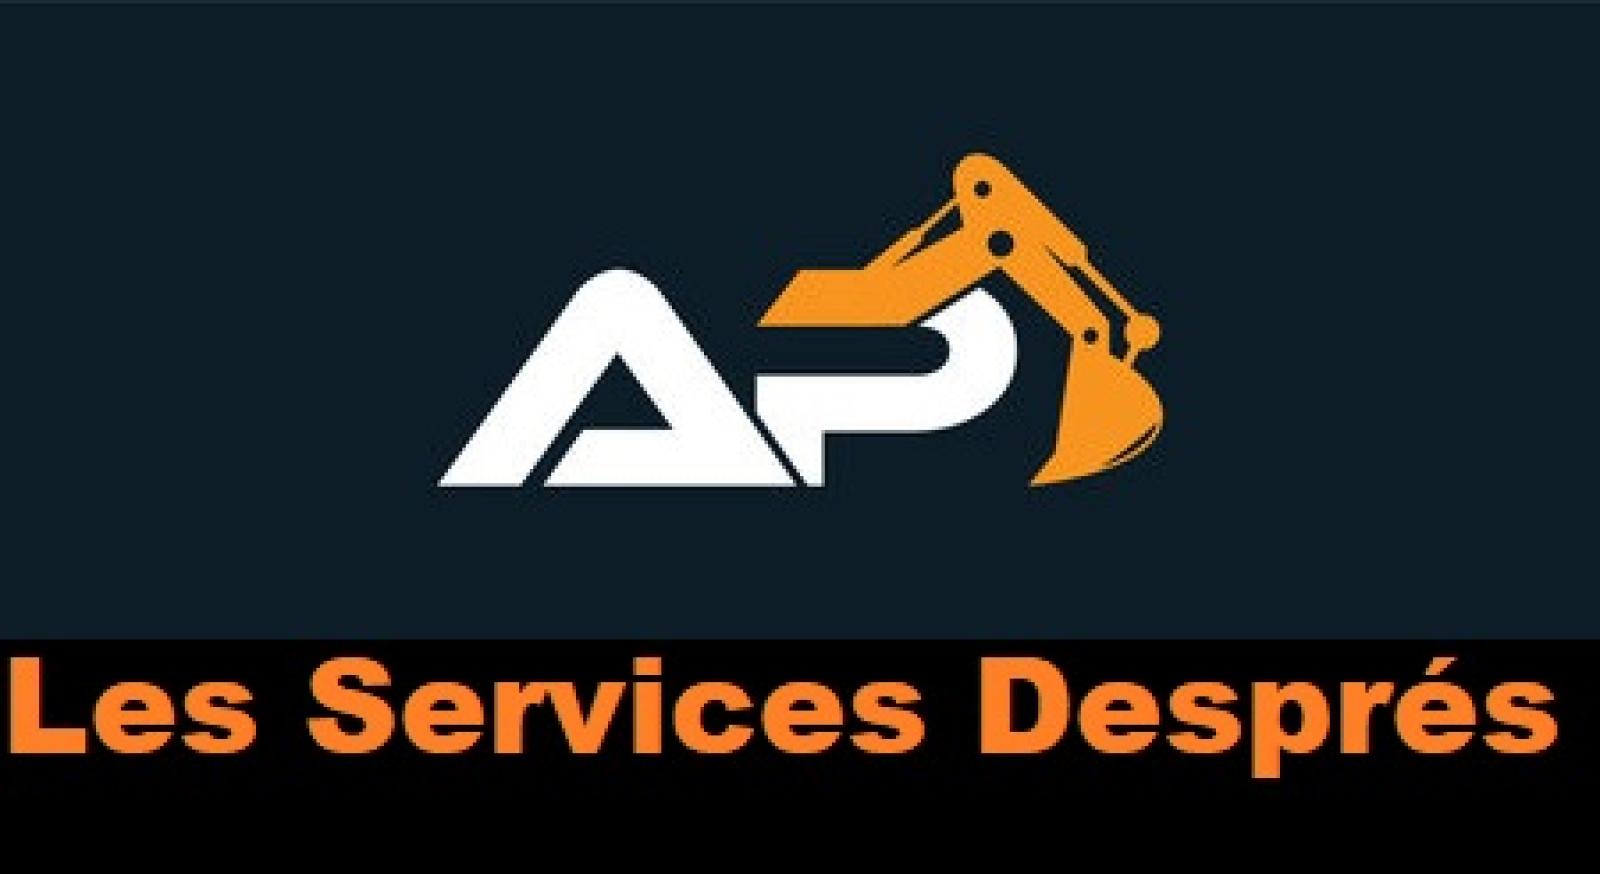 Les Services Després Logo